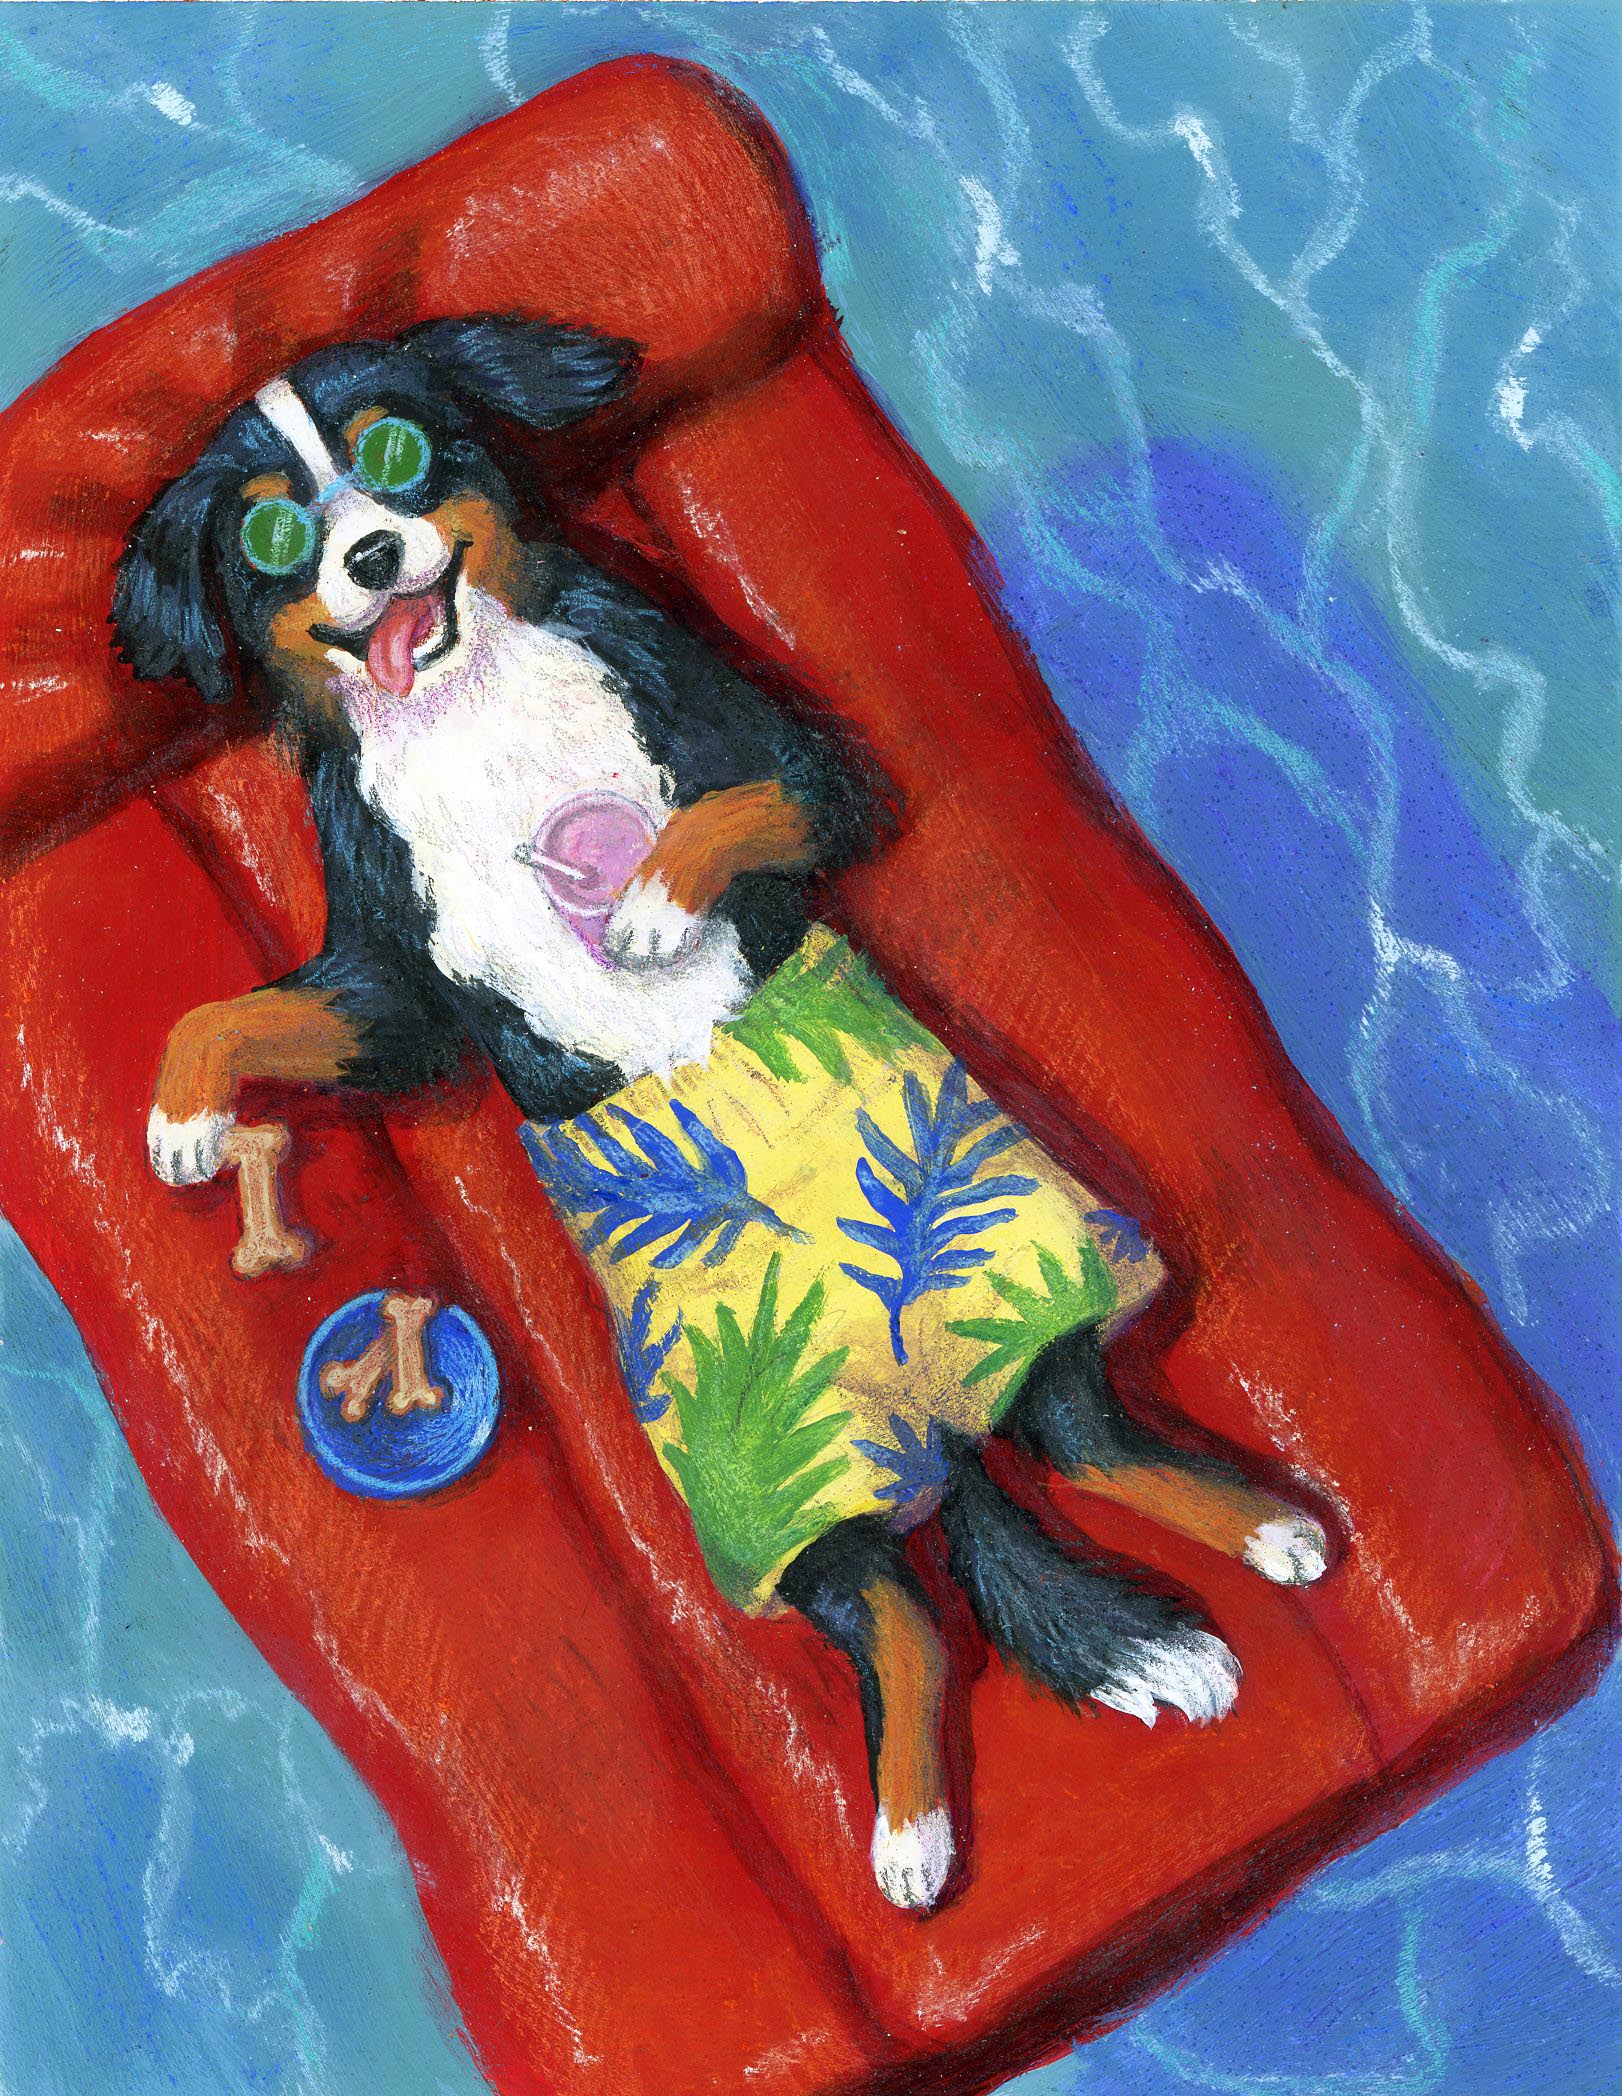 LD12010 Dog on Raft